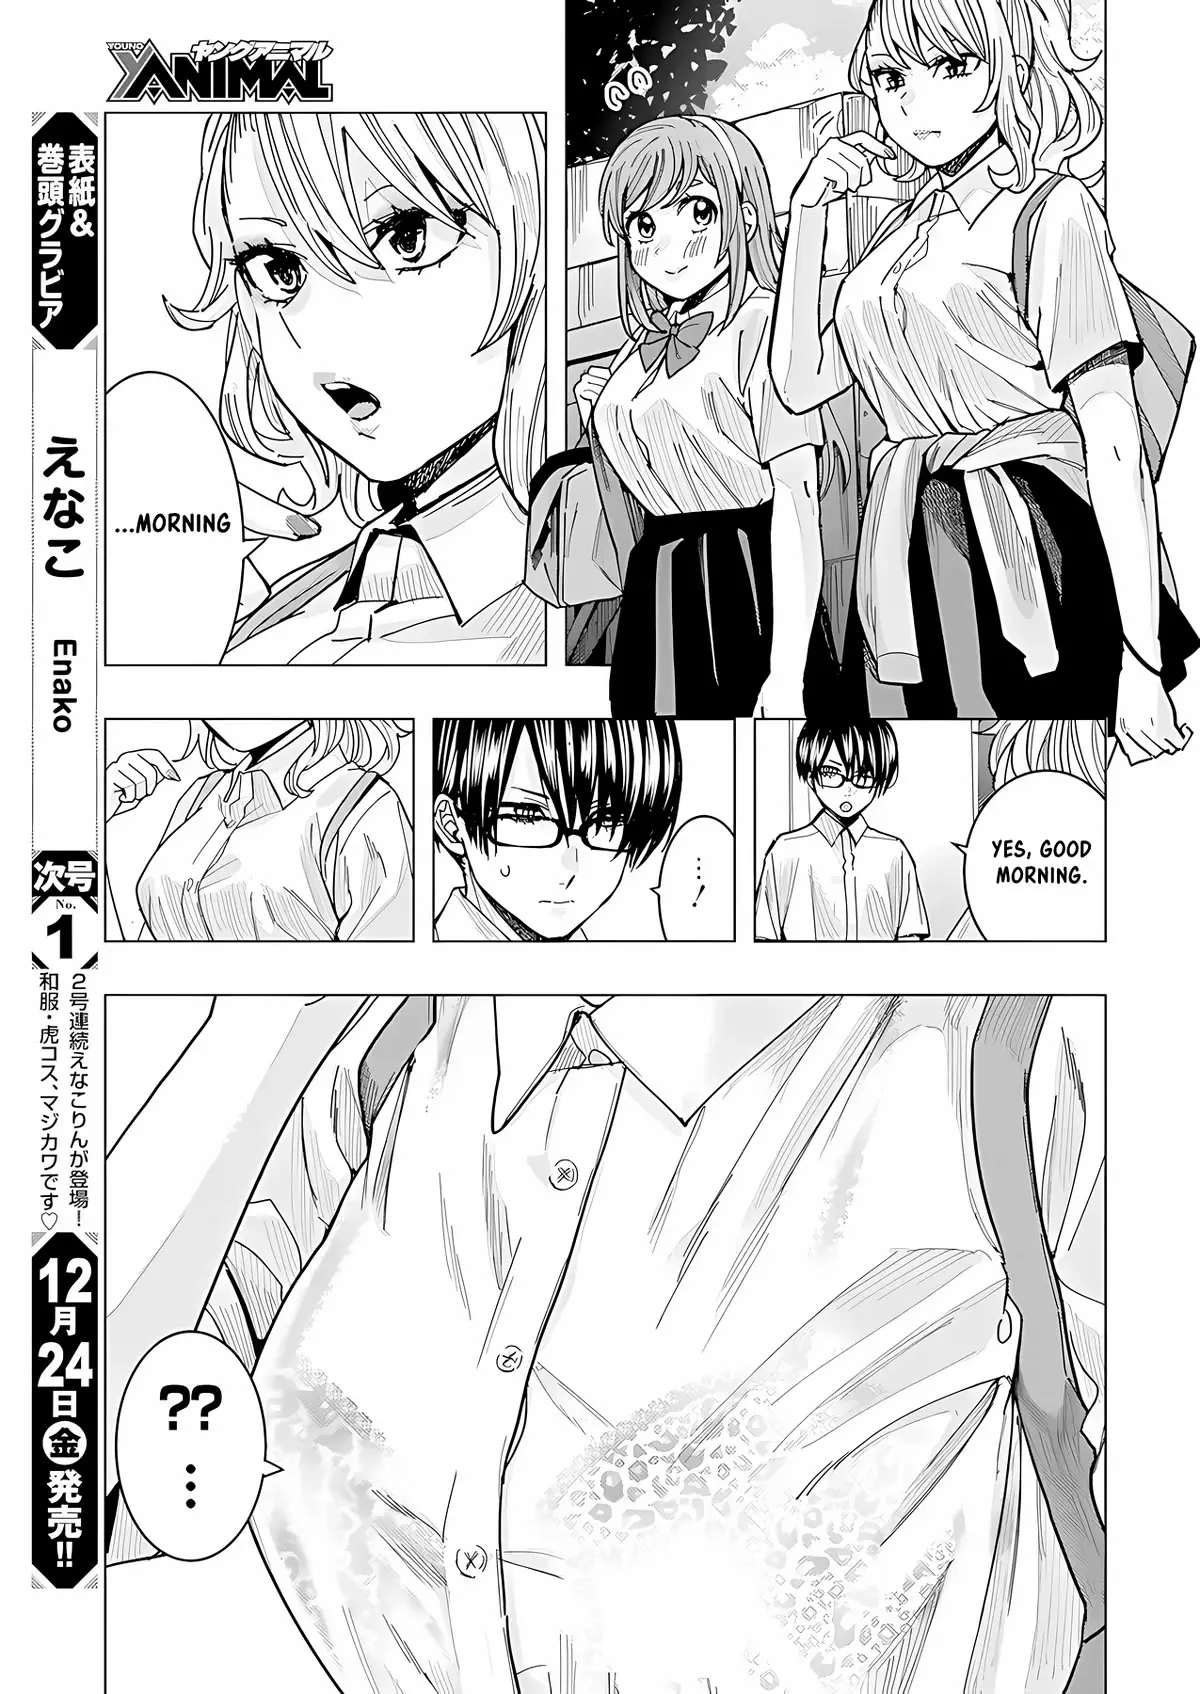 "nobukuni-San" Does She Like Me? - 25 page 9-cd2a1d36